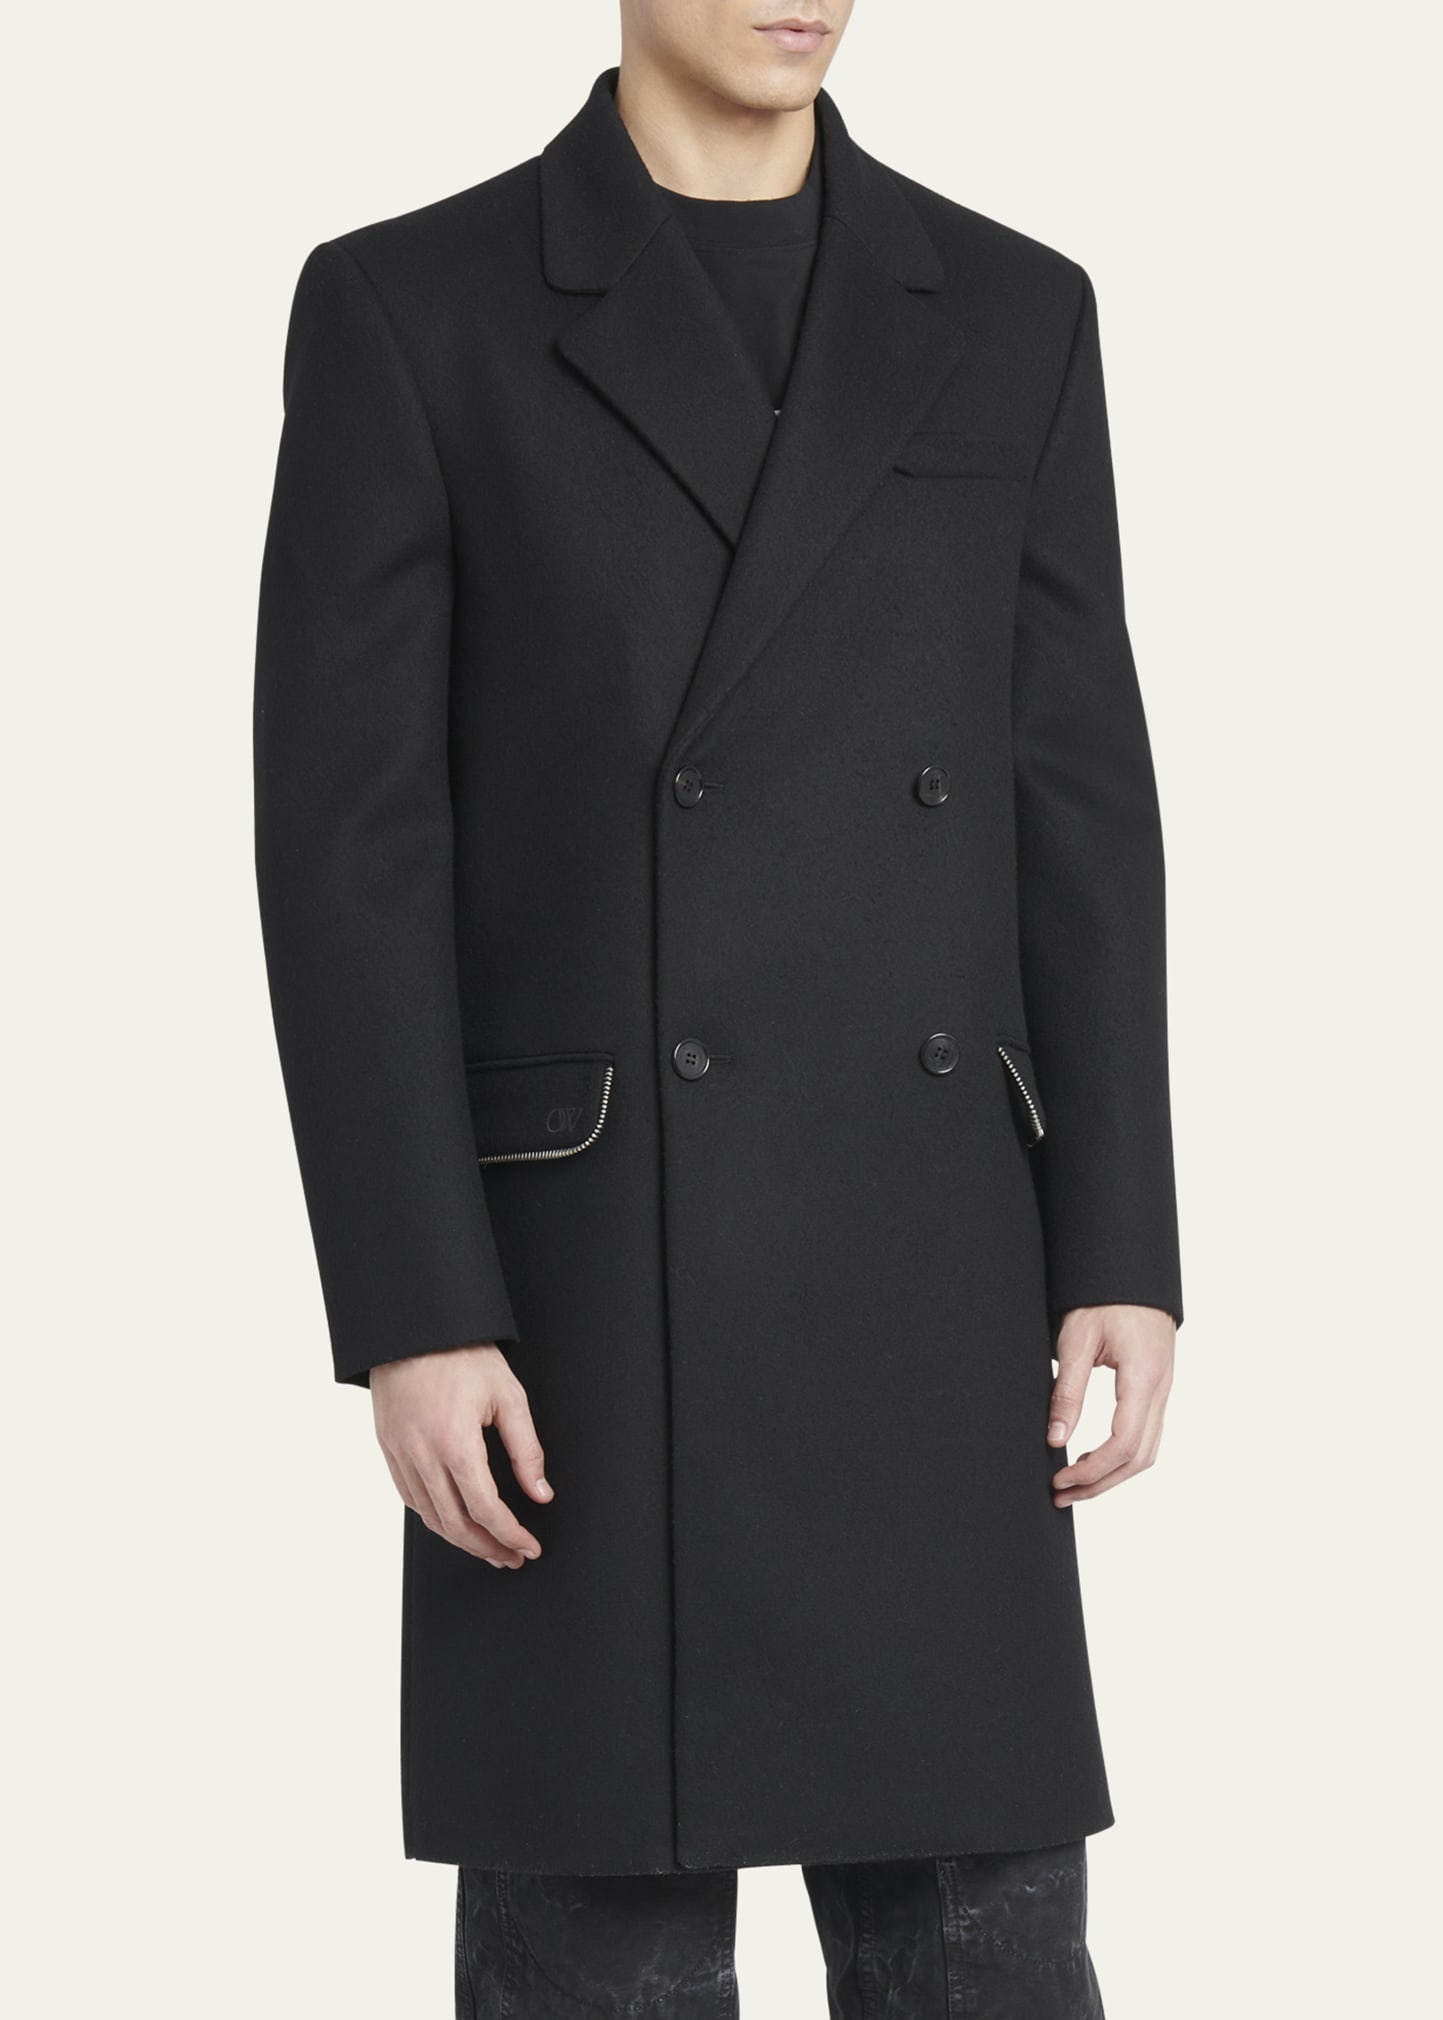 Men's Topcoat with Zipper Details - 4